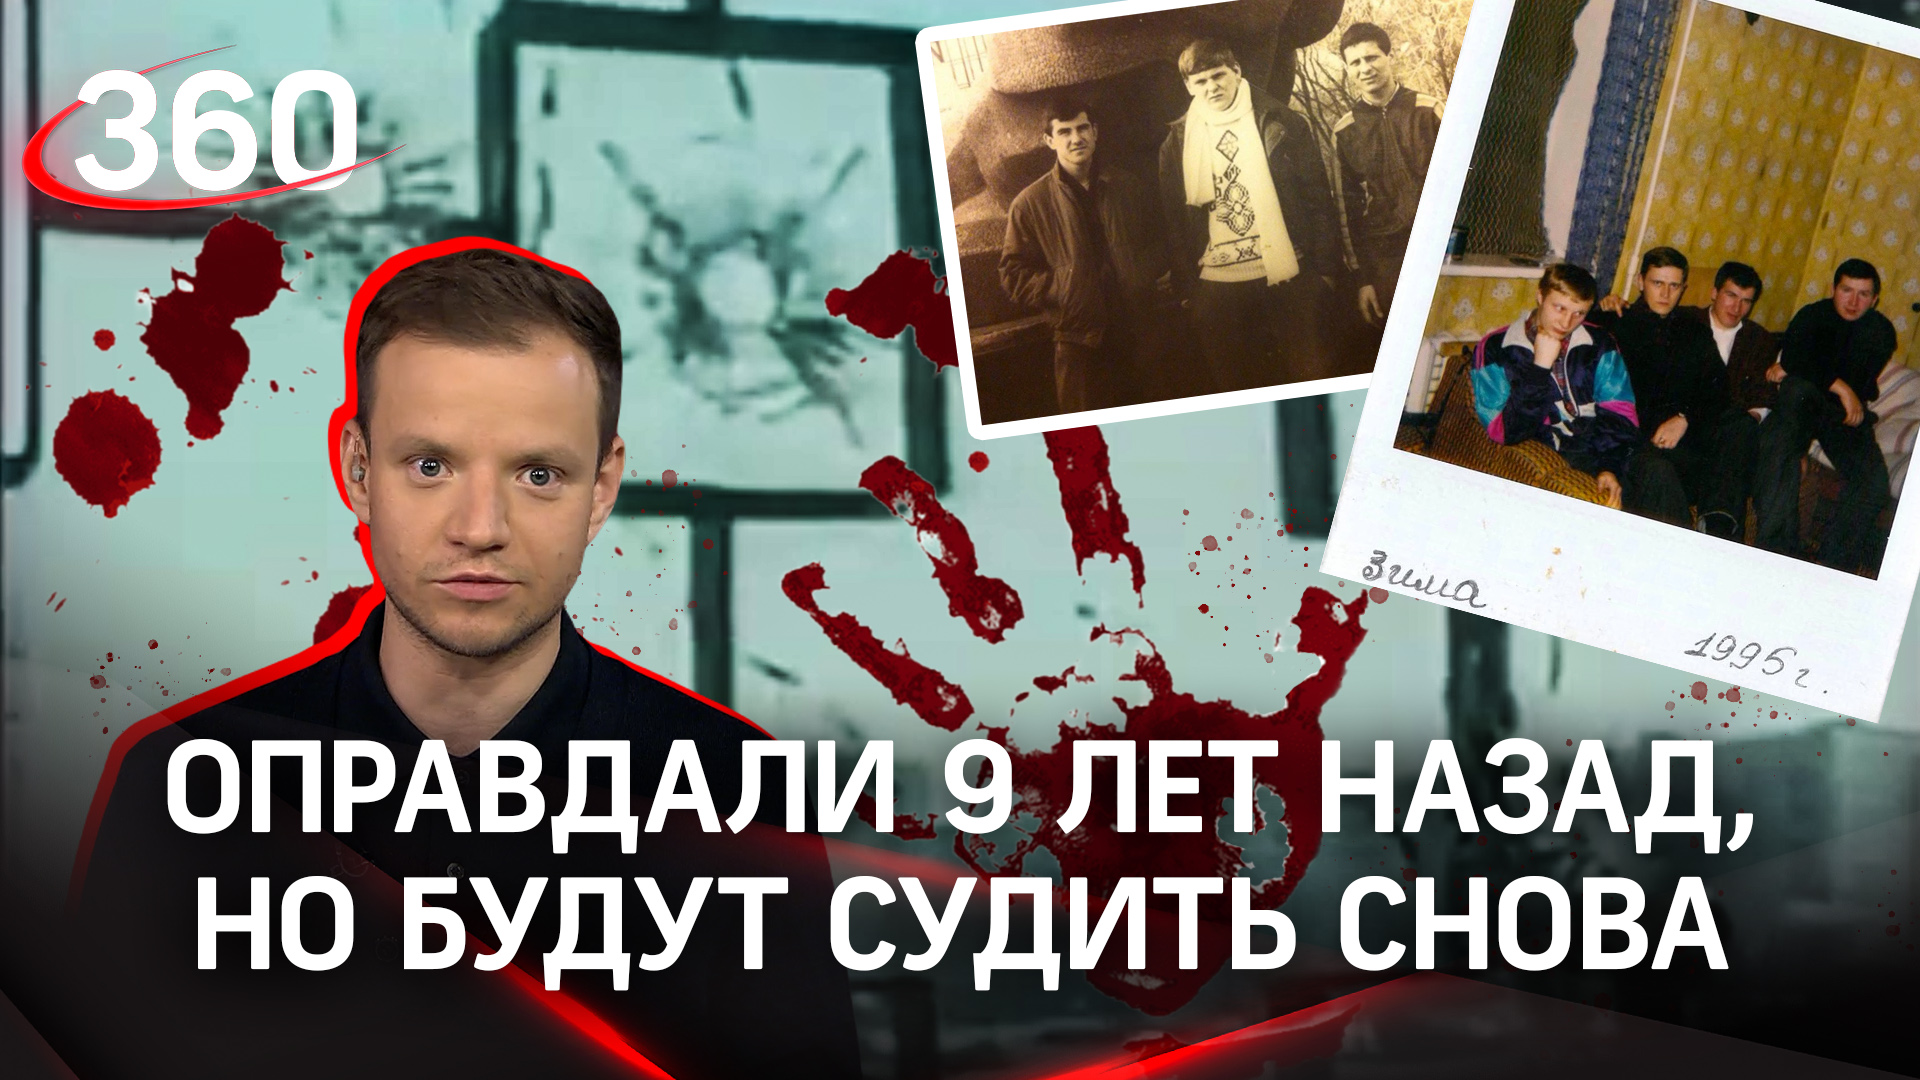 «Покойники на скамье подсудимых»: в Казани начался суд по делу банды «Перваки»